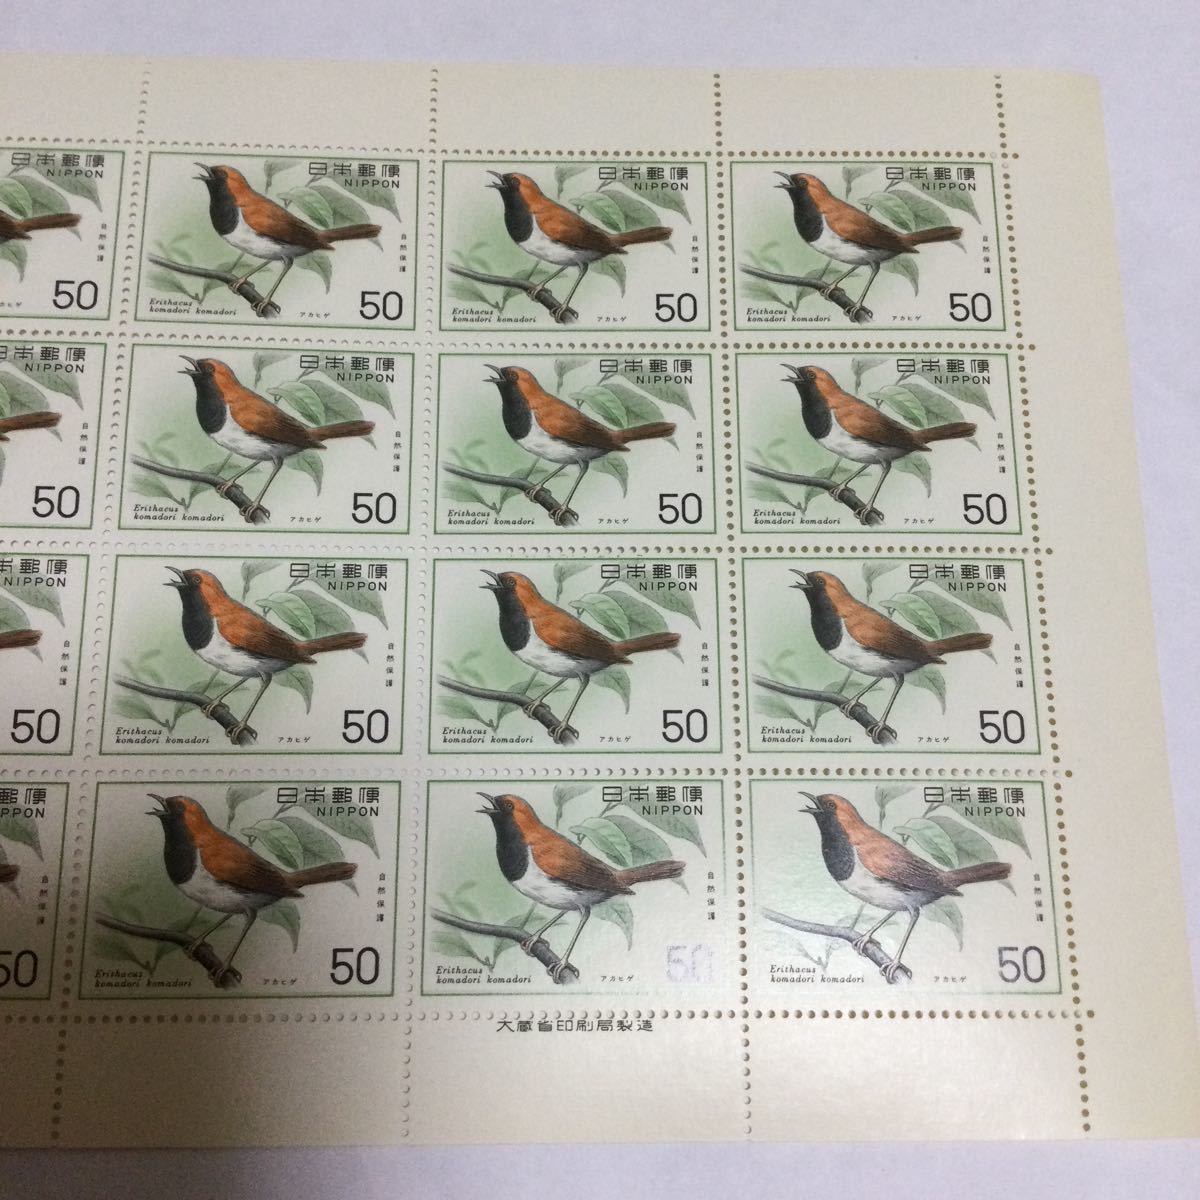 【未使用】1976年 自然保護シリーズ アカヒゲ 50円×20枚 切手 大蔵省印刷局製造 余白 記念切手の画像3